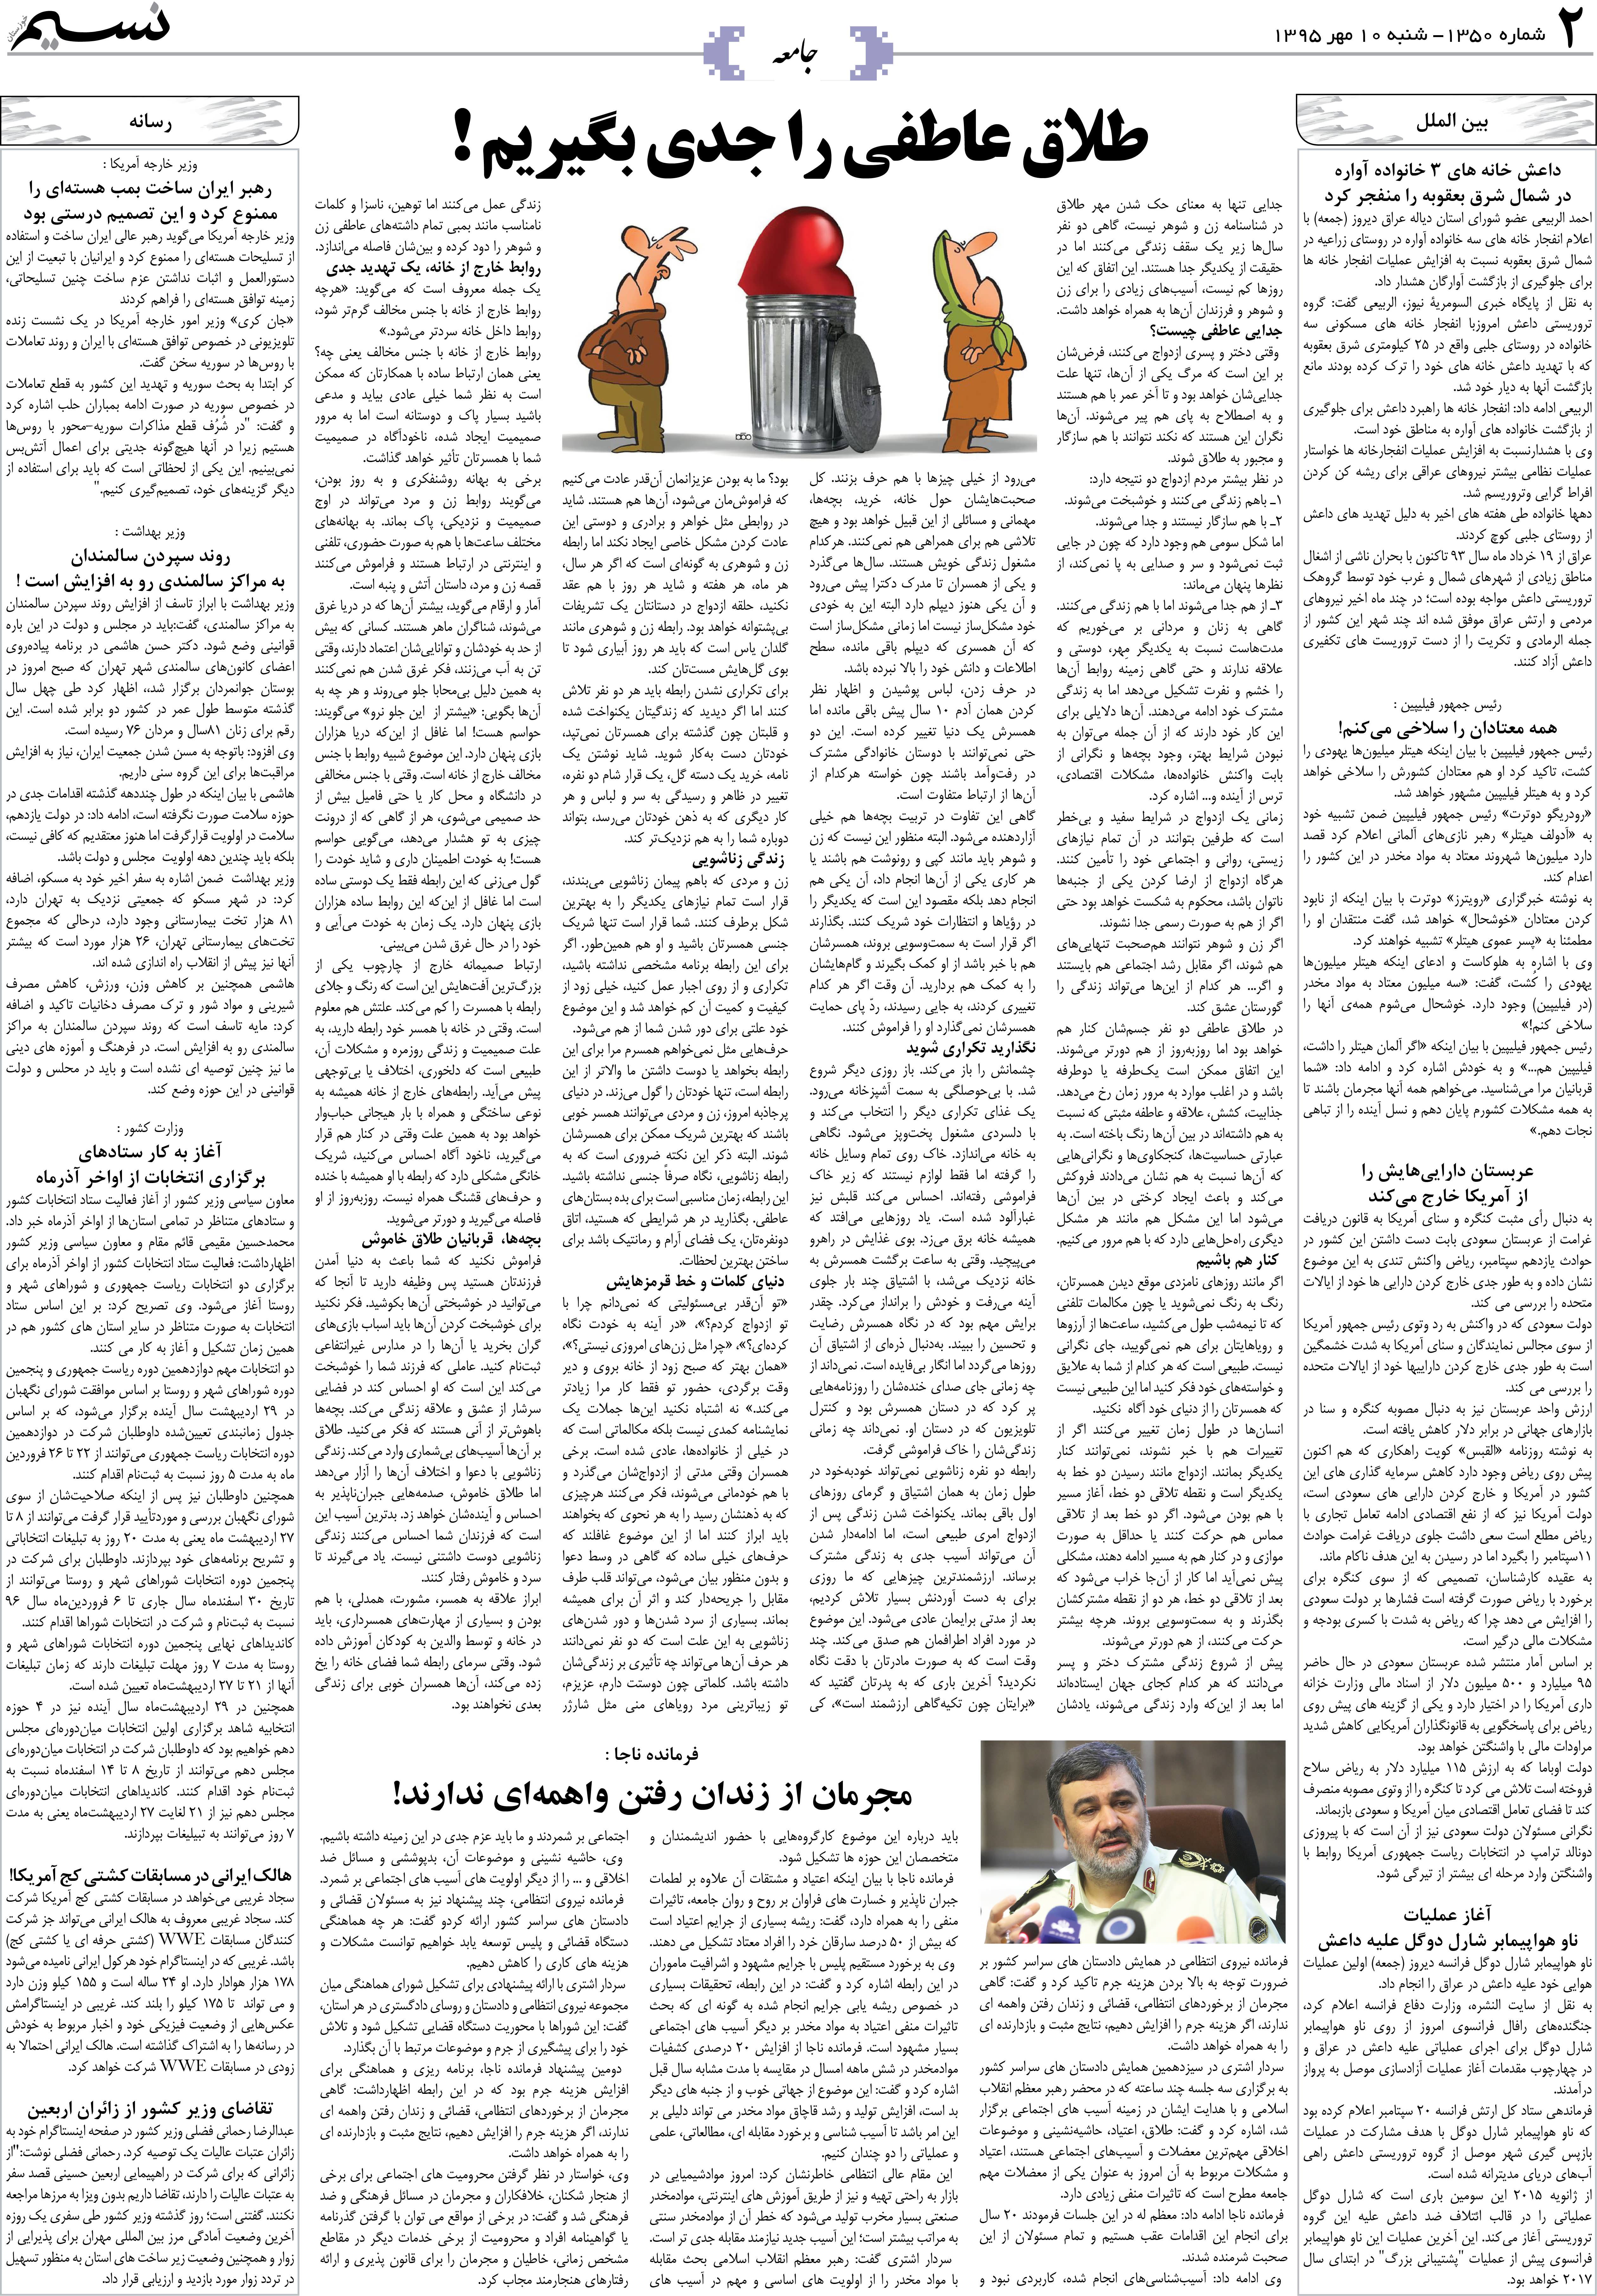 صفحه جامعه روزنامه نسیم شماره 1350